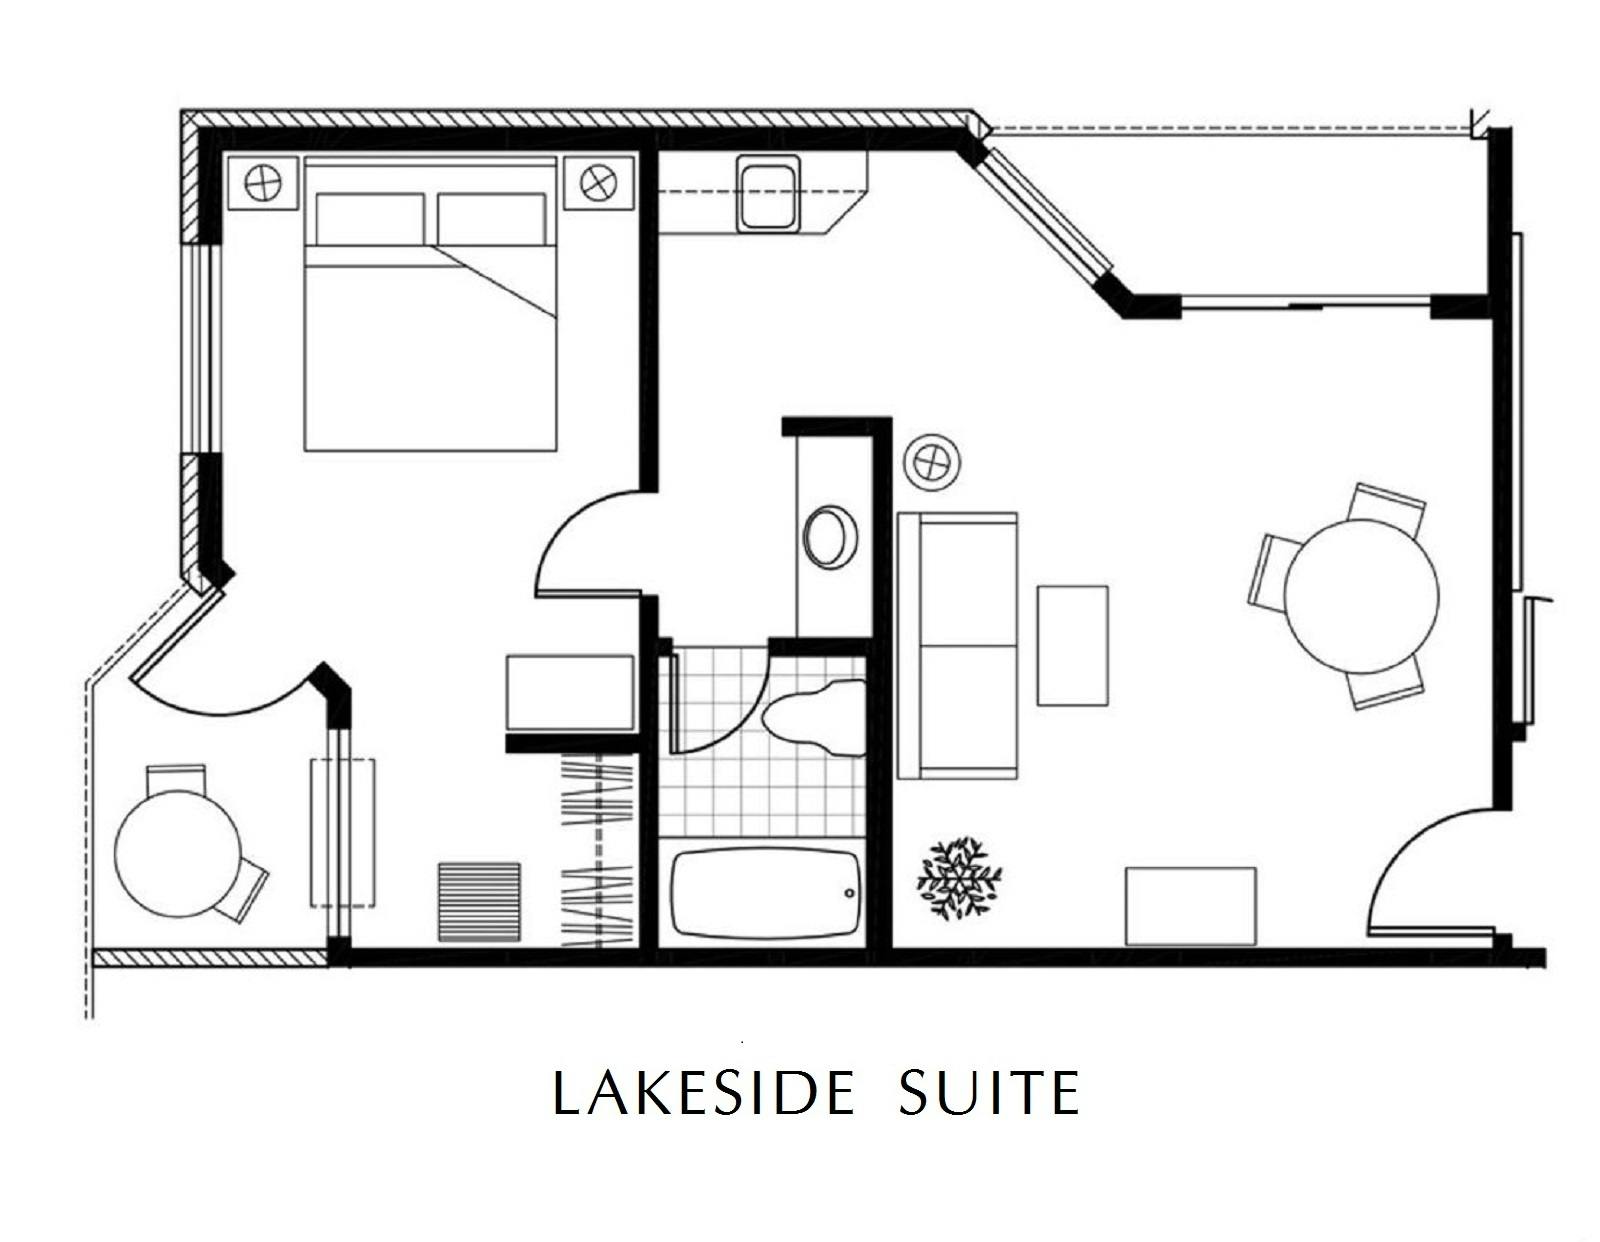 Lakeside Suite floor plan